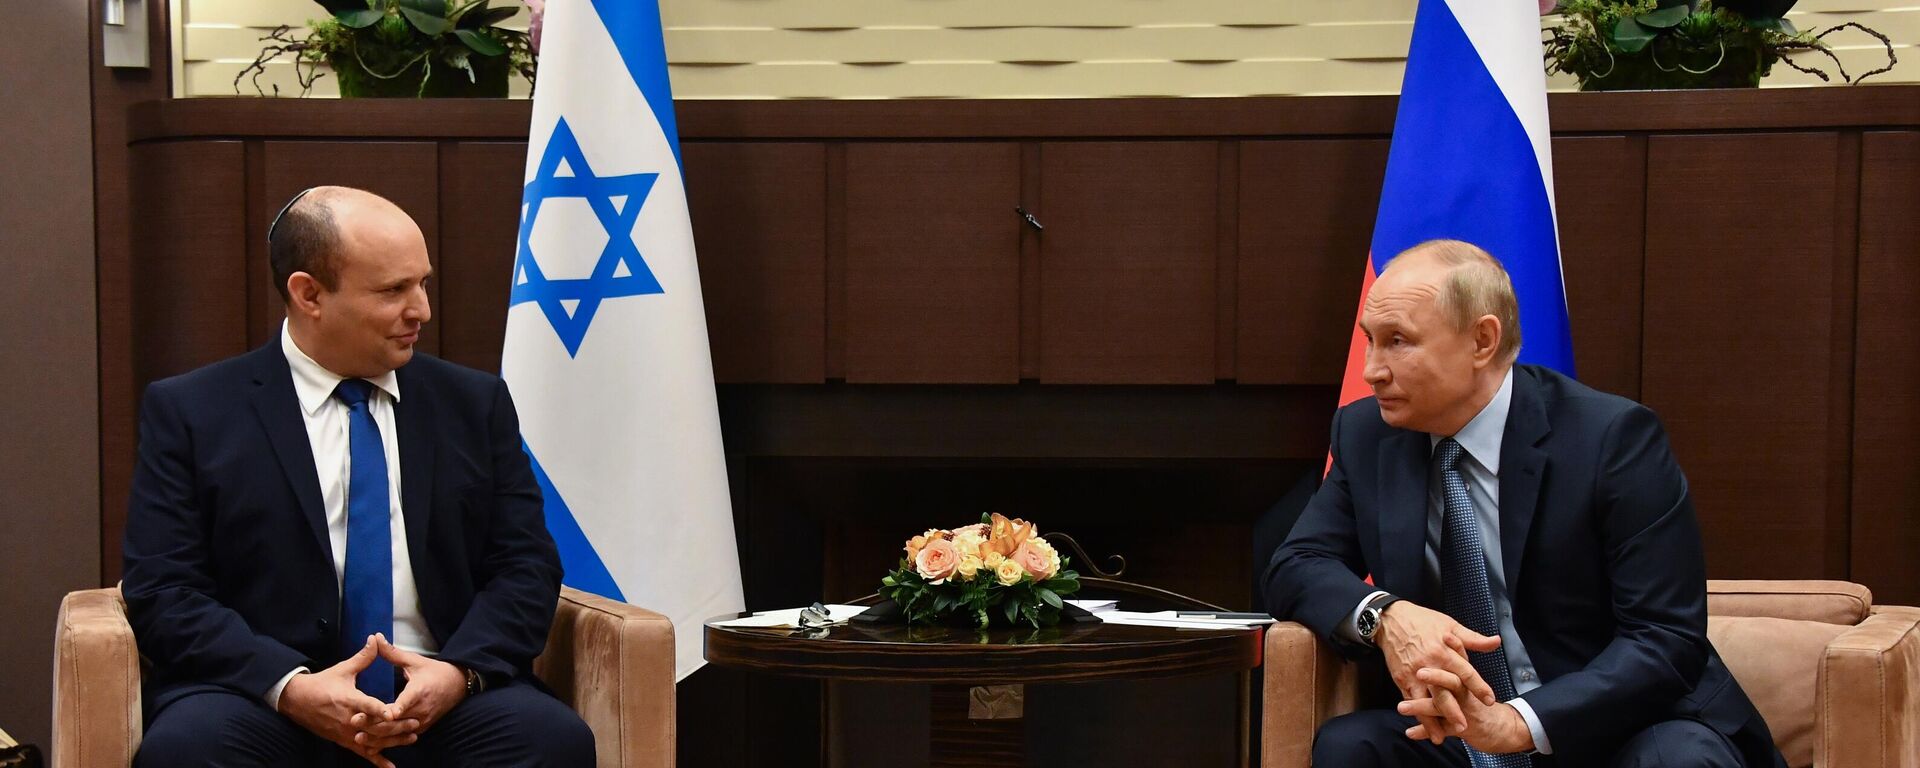 Rusya Devlet Başkanı Vladimir Putin, Soçi'de yeni İsrail Başbakanı Naftali Bennett ile ilk yüz yüze görüşmesini gerçekleştirdi. - Sputnik Türkiye, 1920, 05.05.2022